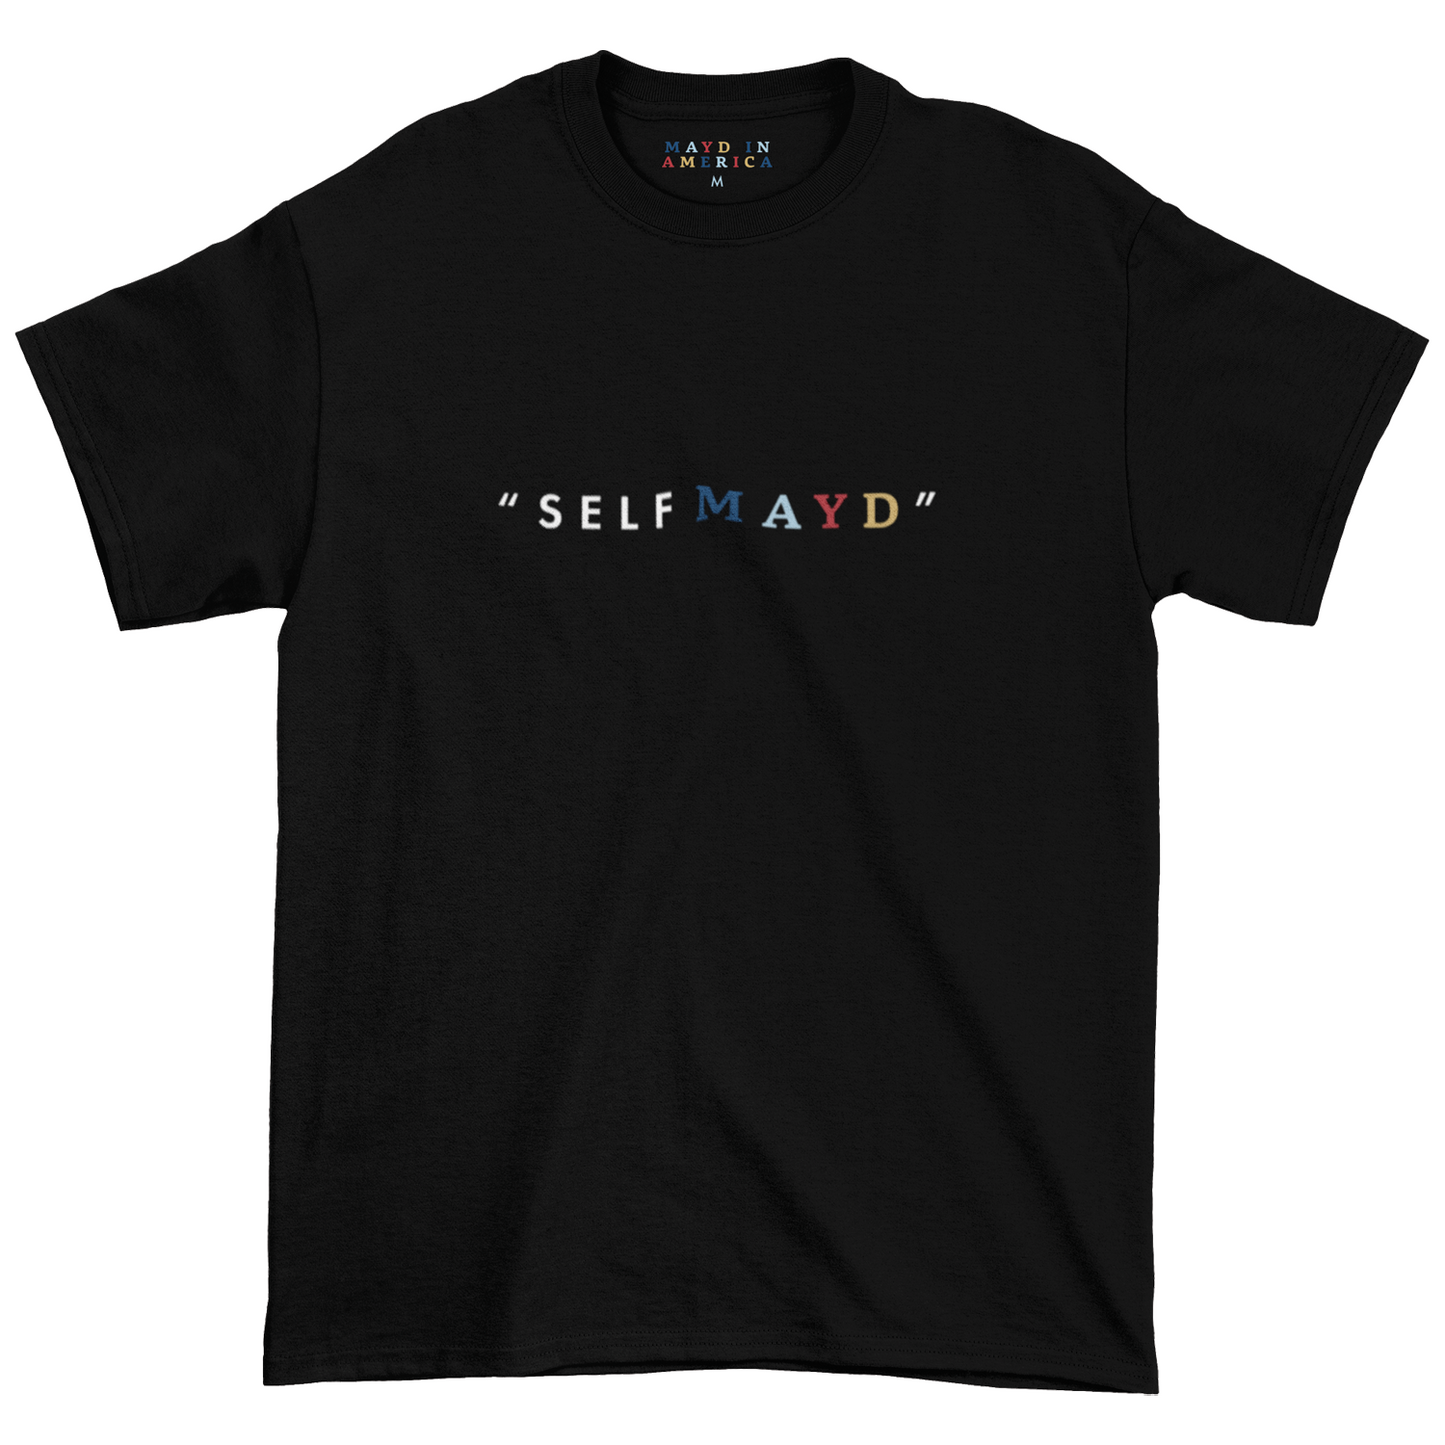 MAYD in America "Self Mayd" T-shirt